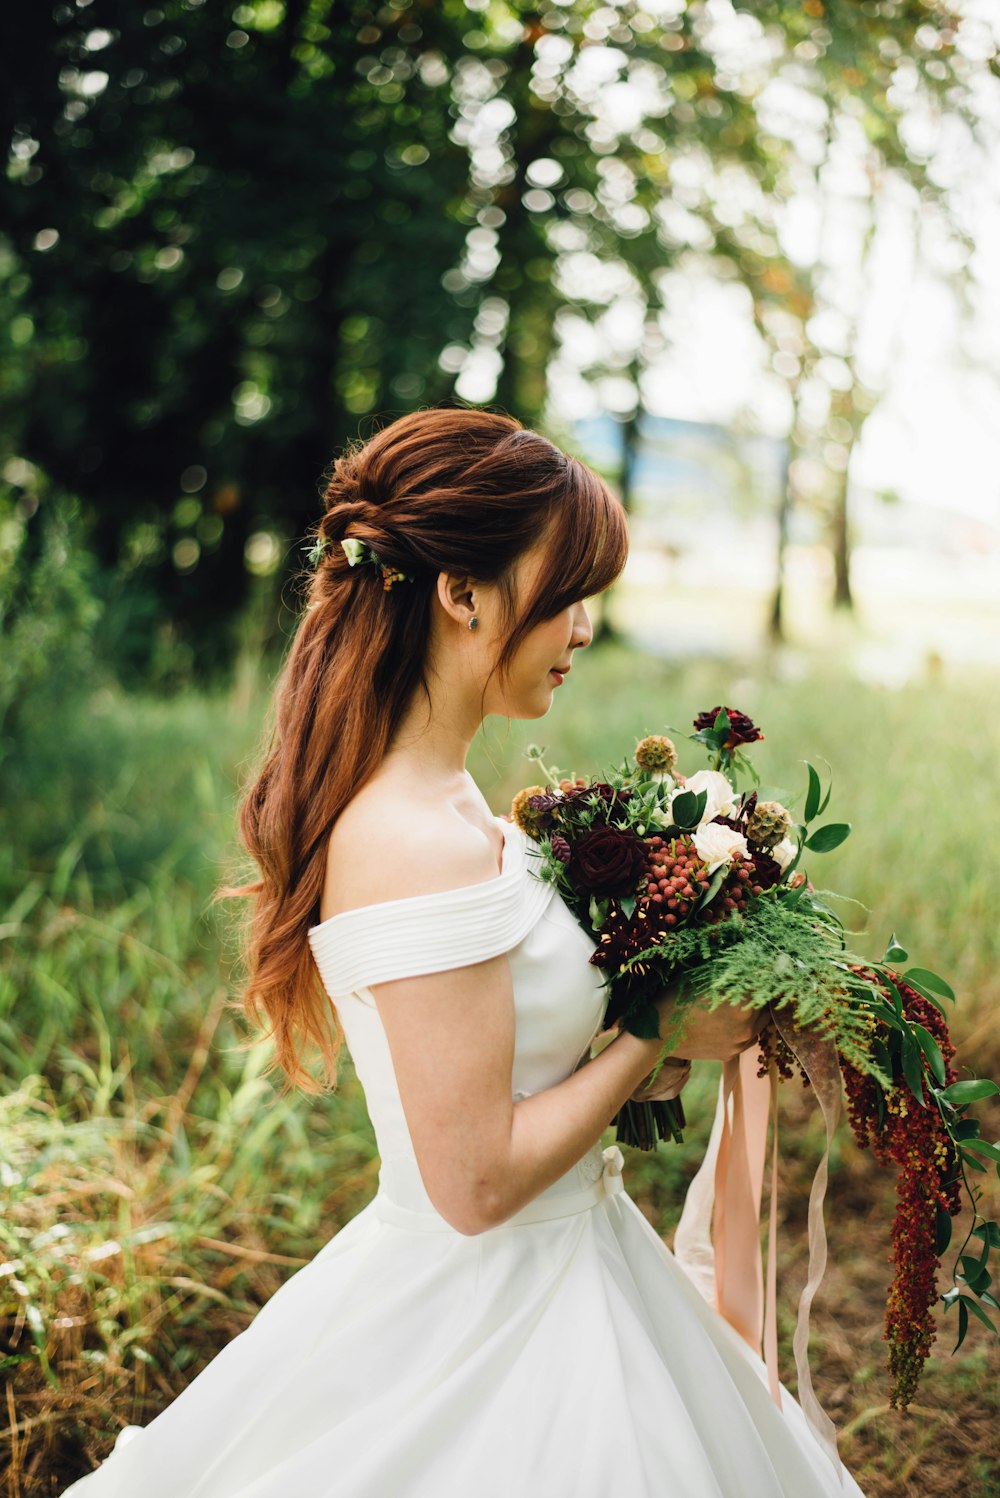 Frau trägt weißes schulterfreies Hochzeitskleid mit weißer Blütenblüte